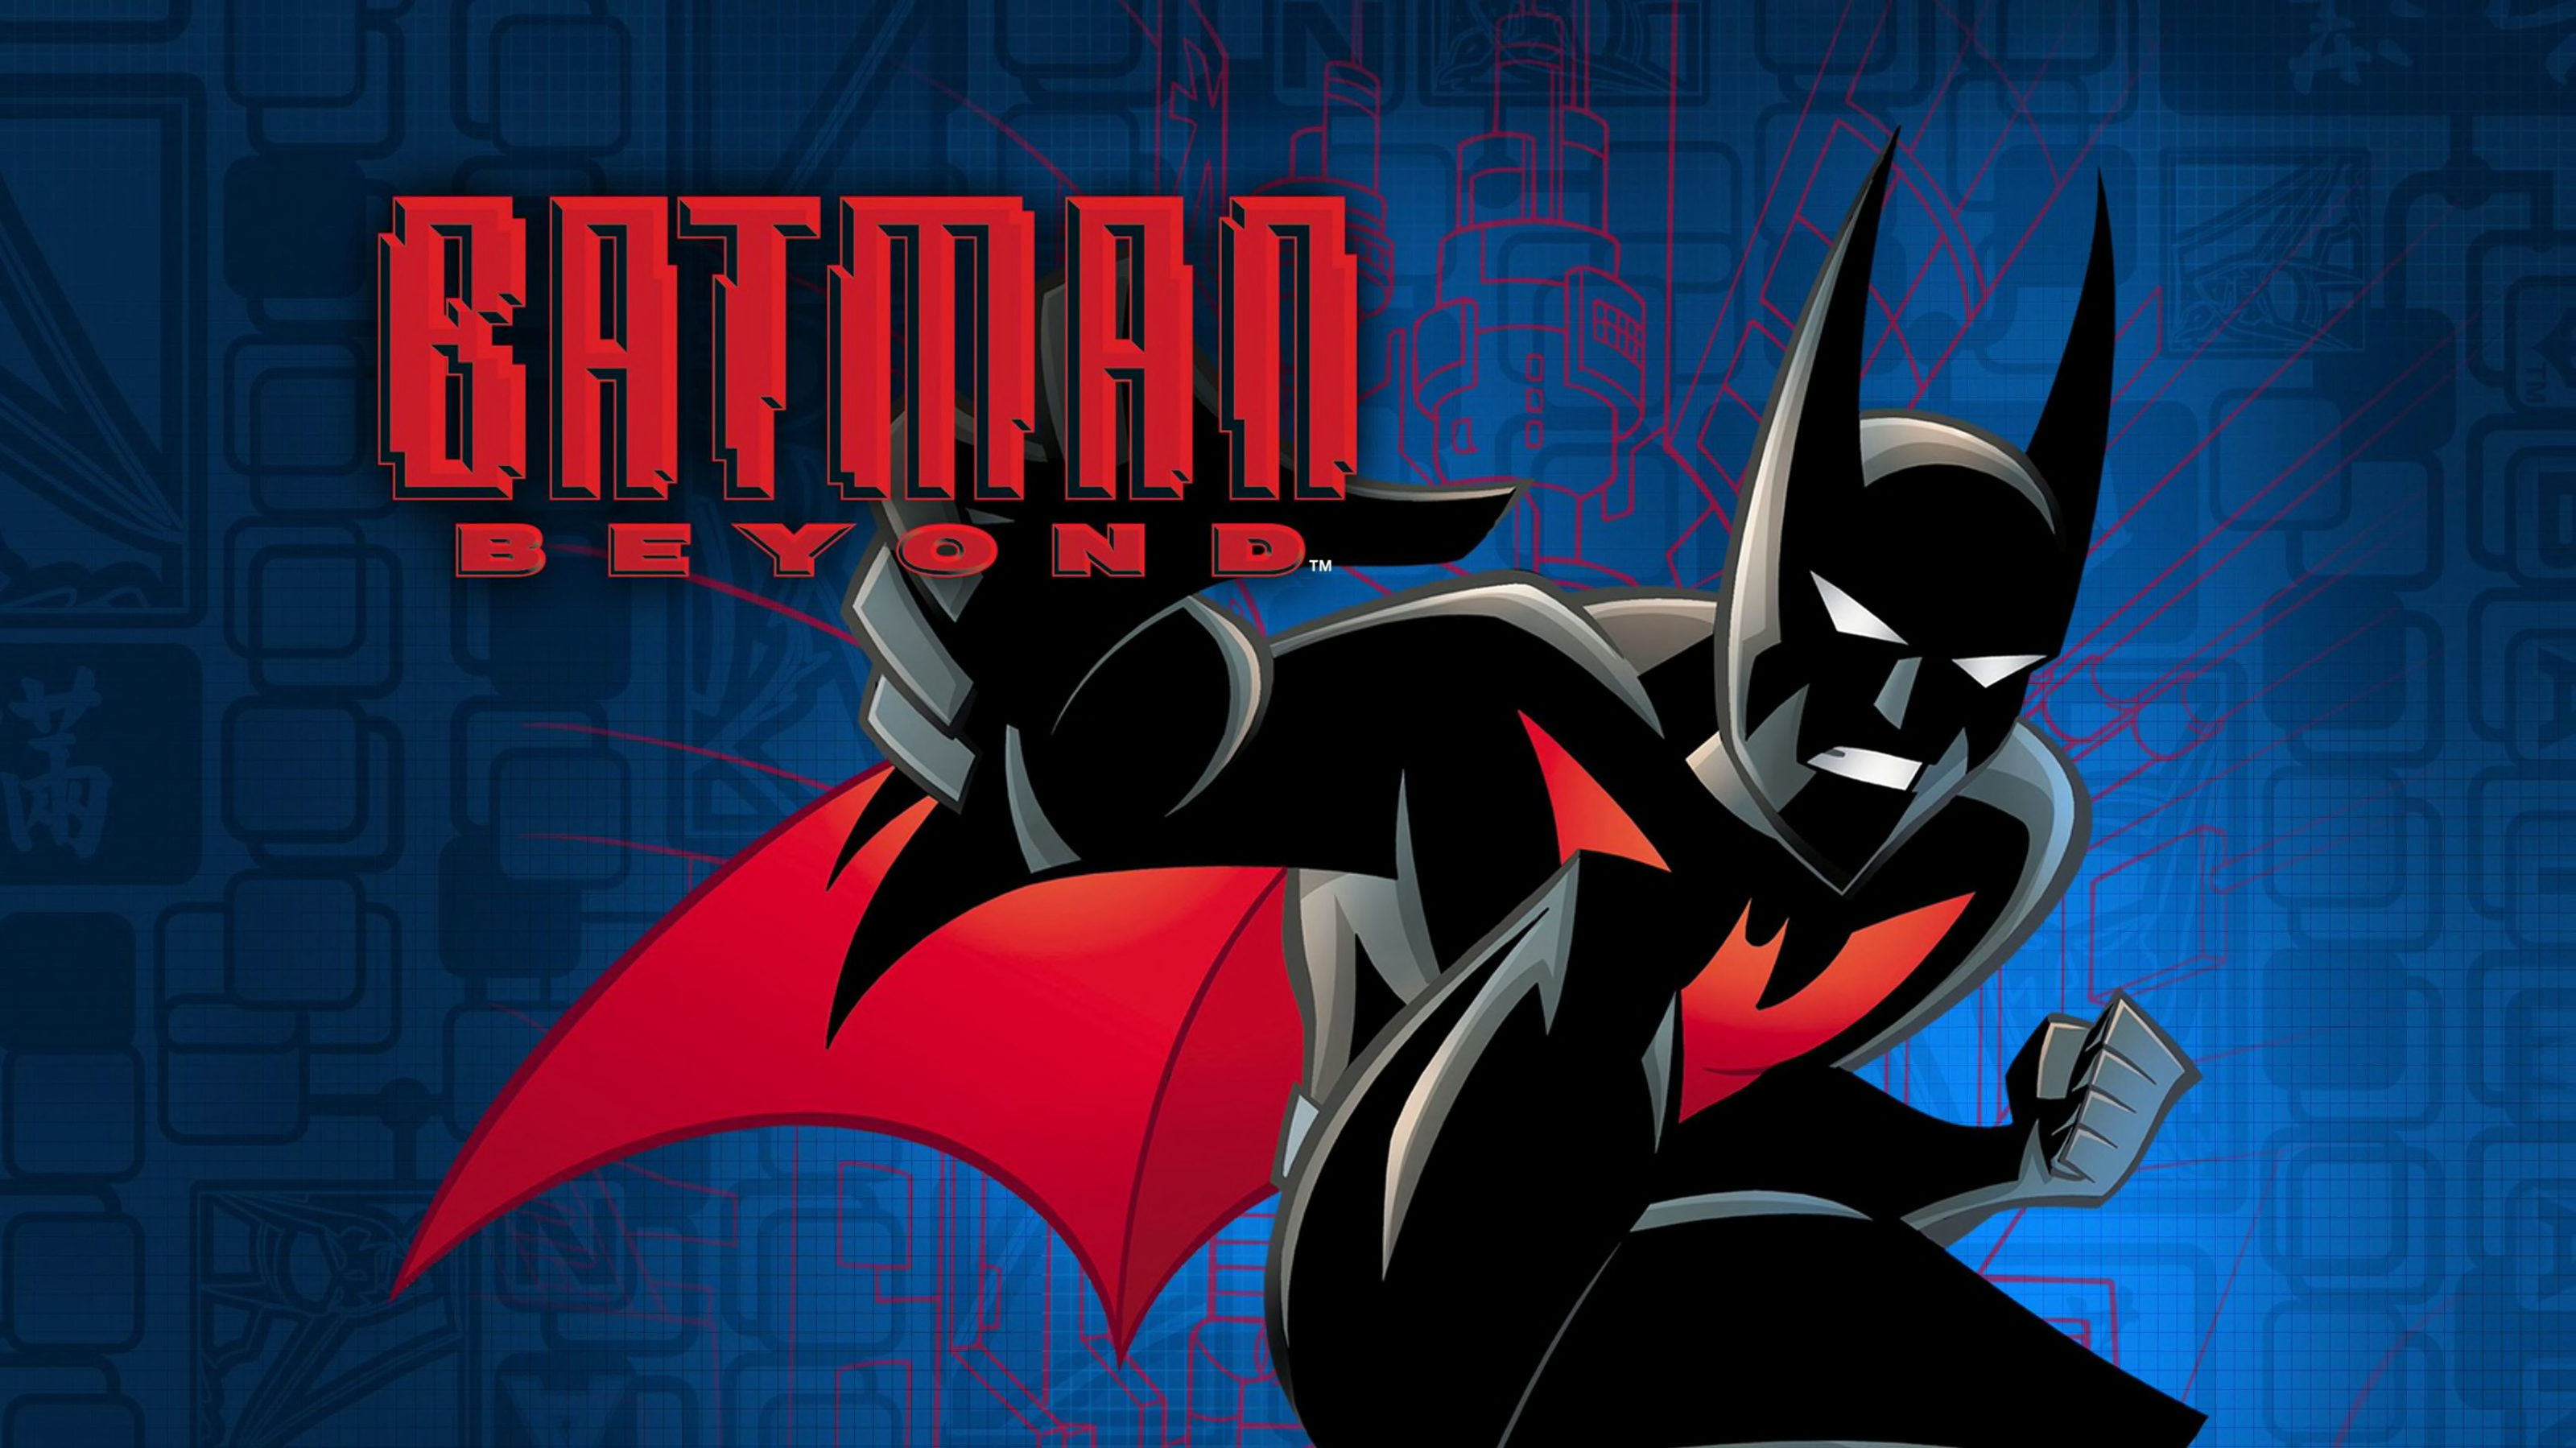 DC Evreninde Batman Beyond’u canlandırabilecek 10 oyuncu